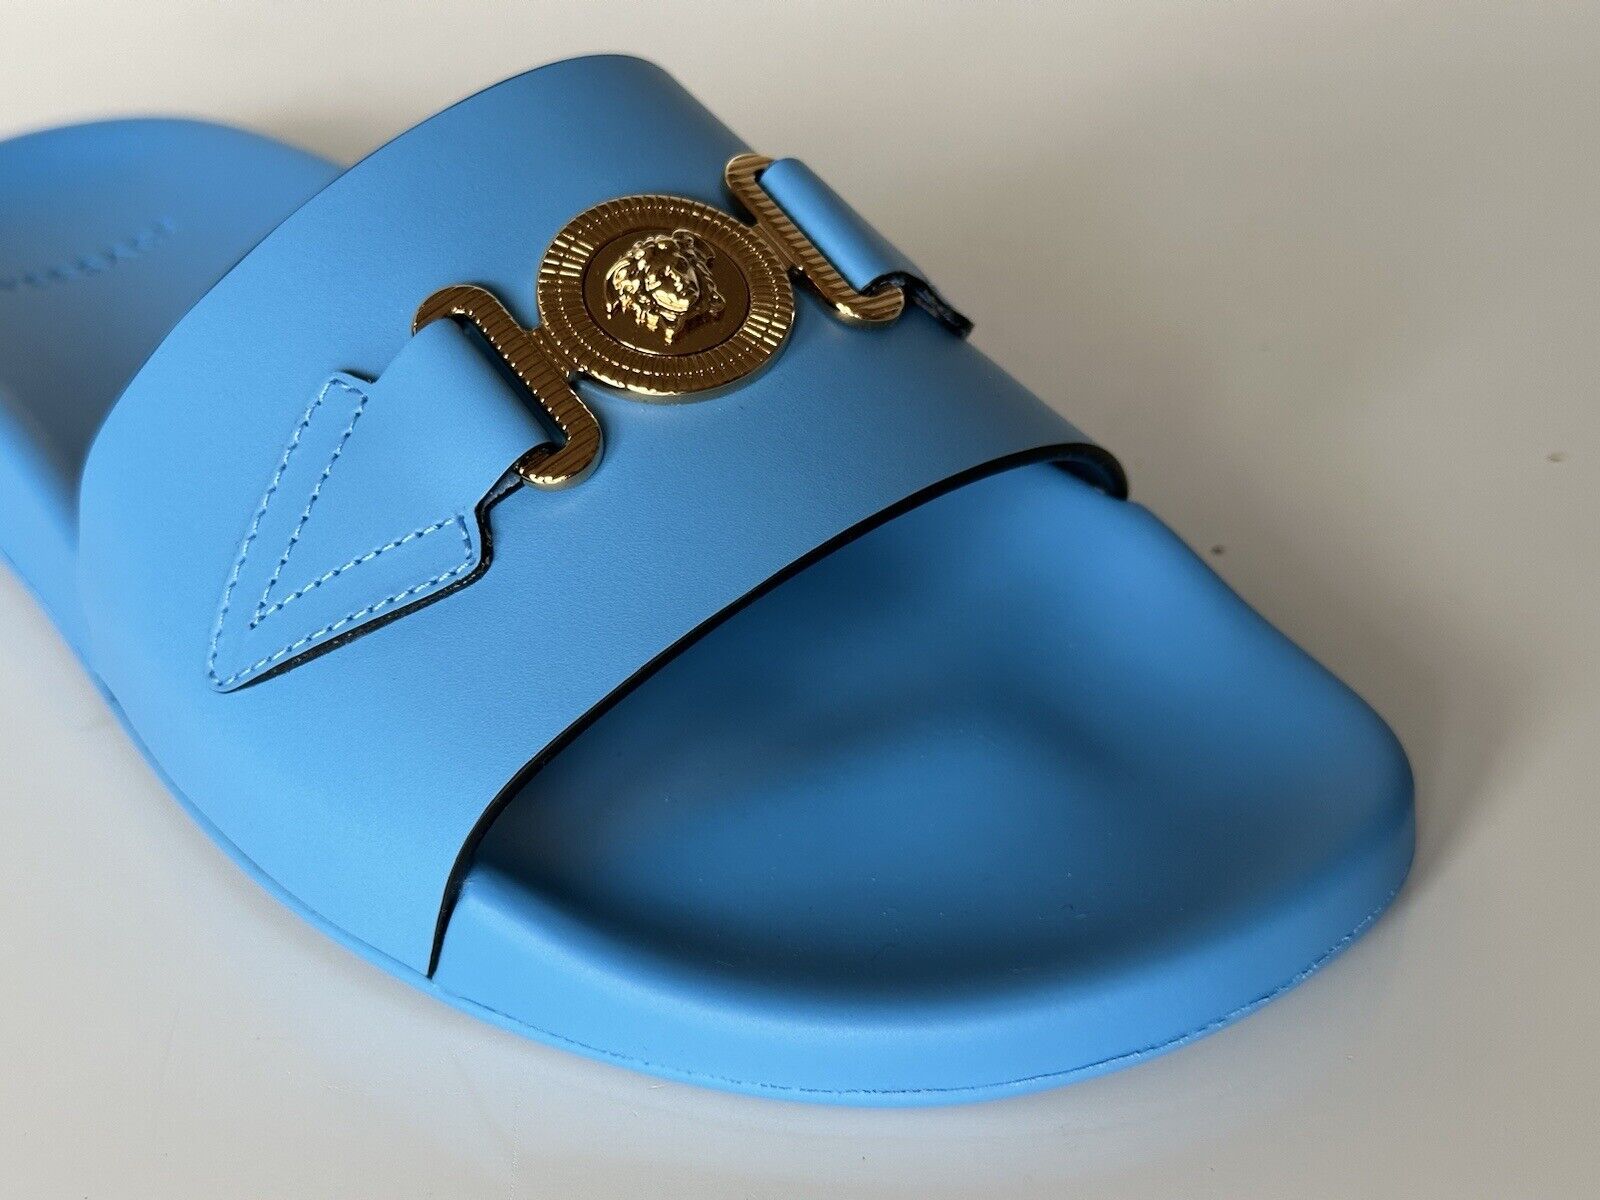 NIB 575 долларов США Versace Gold Medusa Кожаные/резиновые сандалии Синие 9 США (42) 1004983 Италия